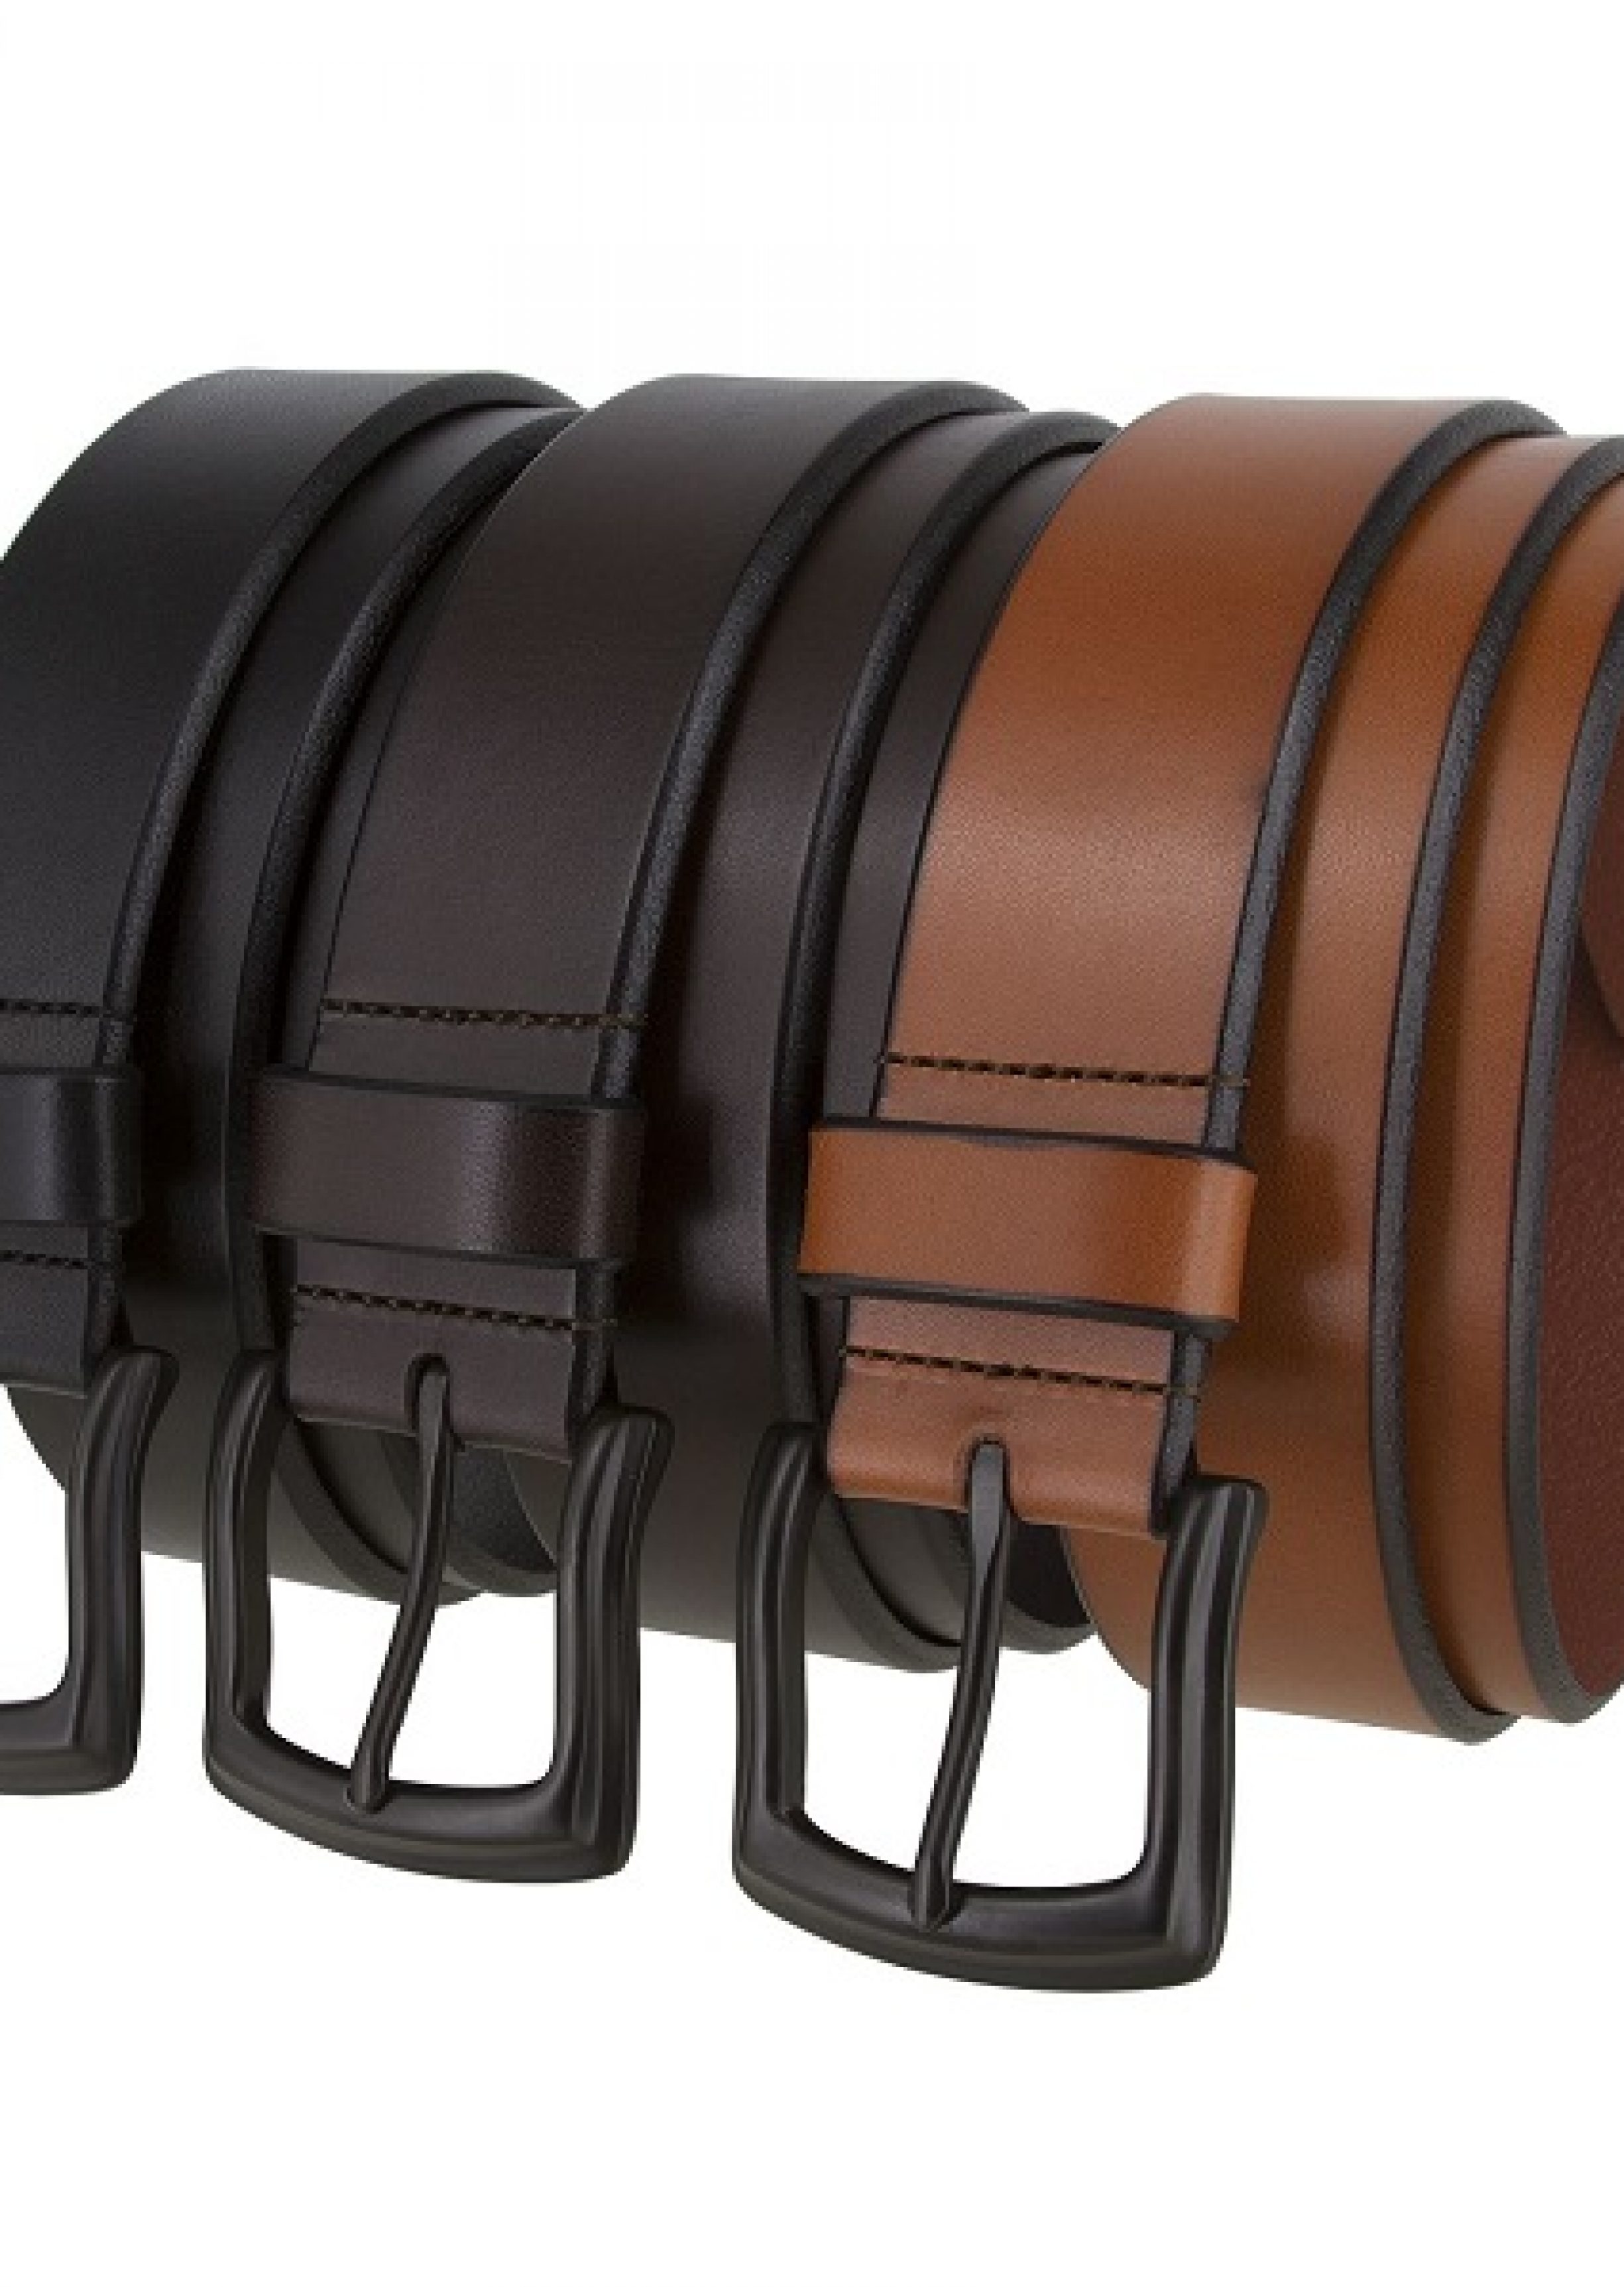 leather belt manufacturer in kanur super international